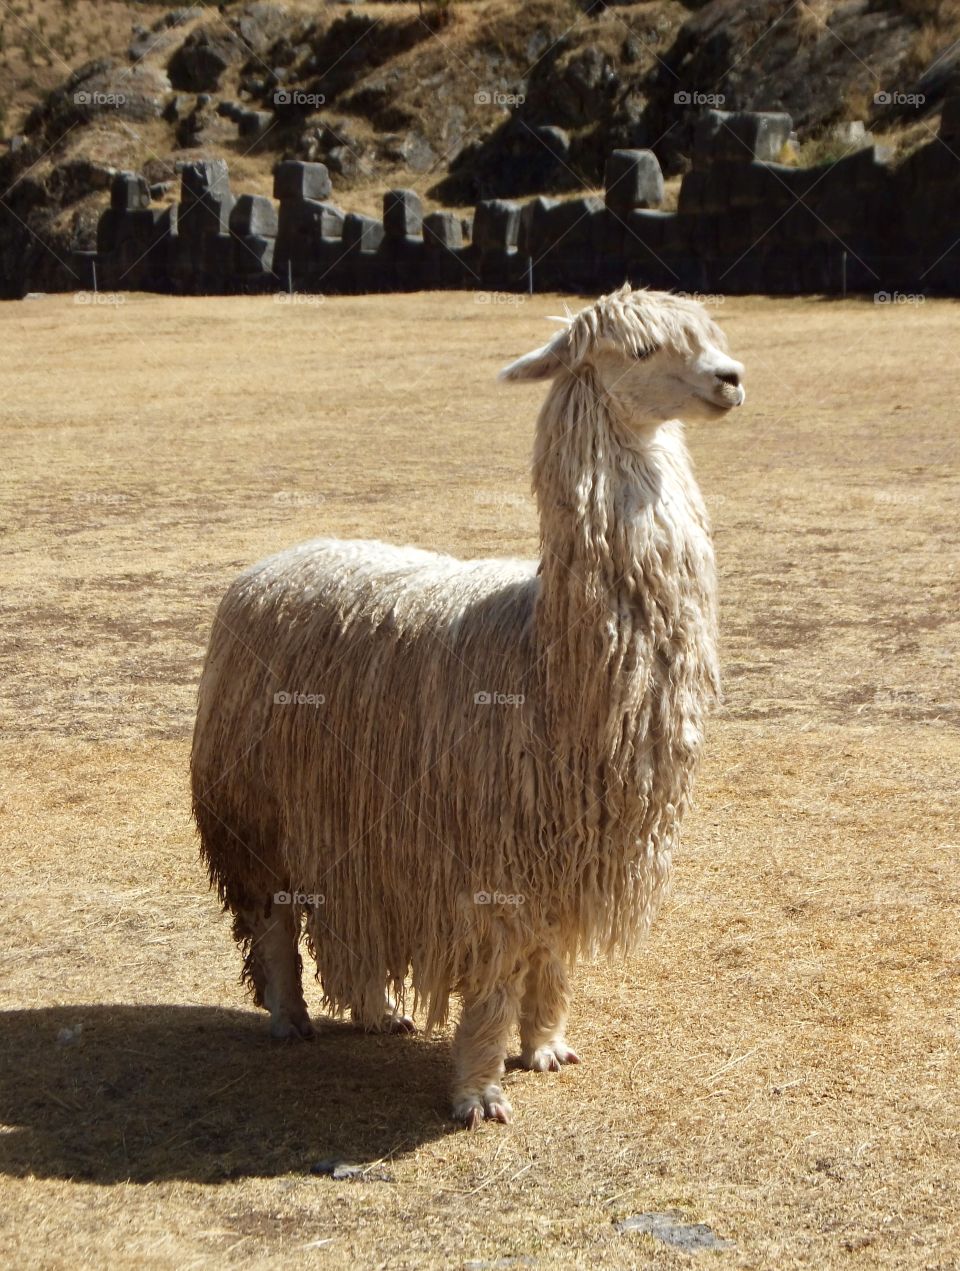 A Peruvian alpaca alone 